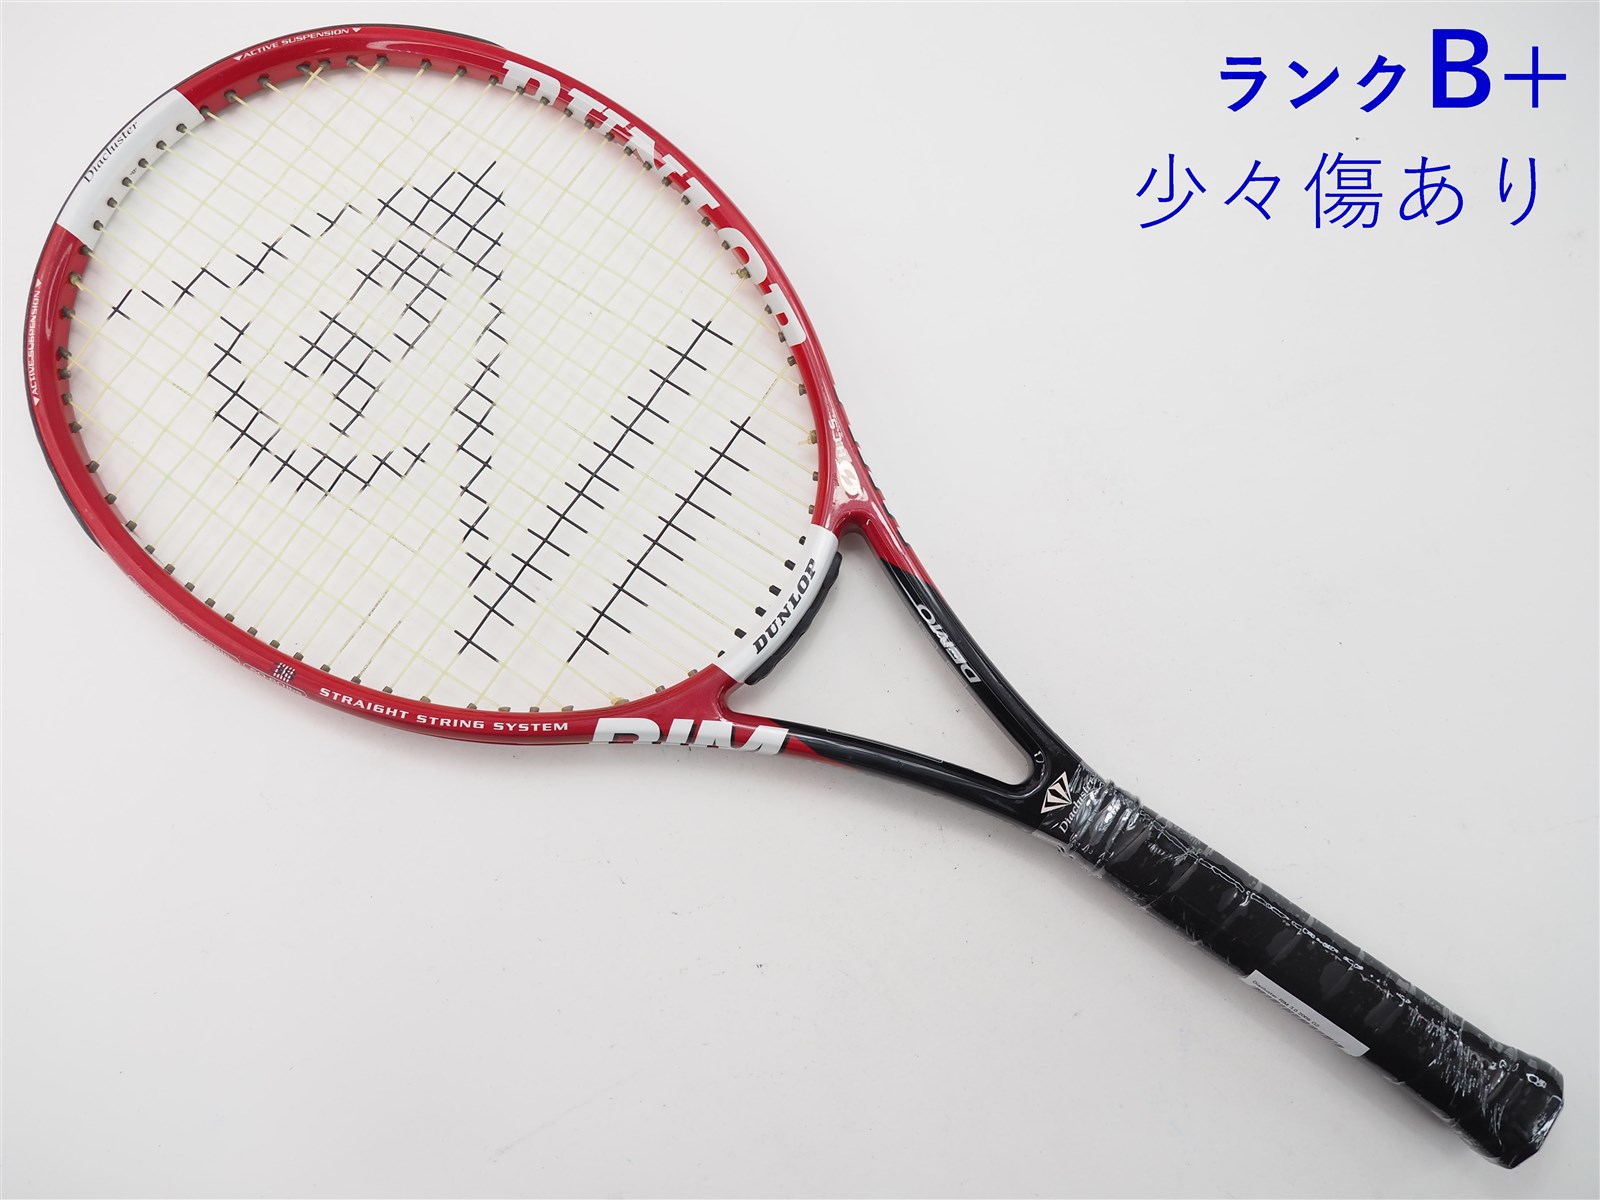 【中古】ダンロップ ダイアクラスター リム 3.0 2006年モデル【DEMO】DUNLOP Diacluster RIM 3.0  2006(G2)【中古 テニスラケット】【送料無料】